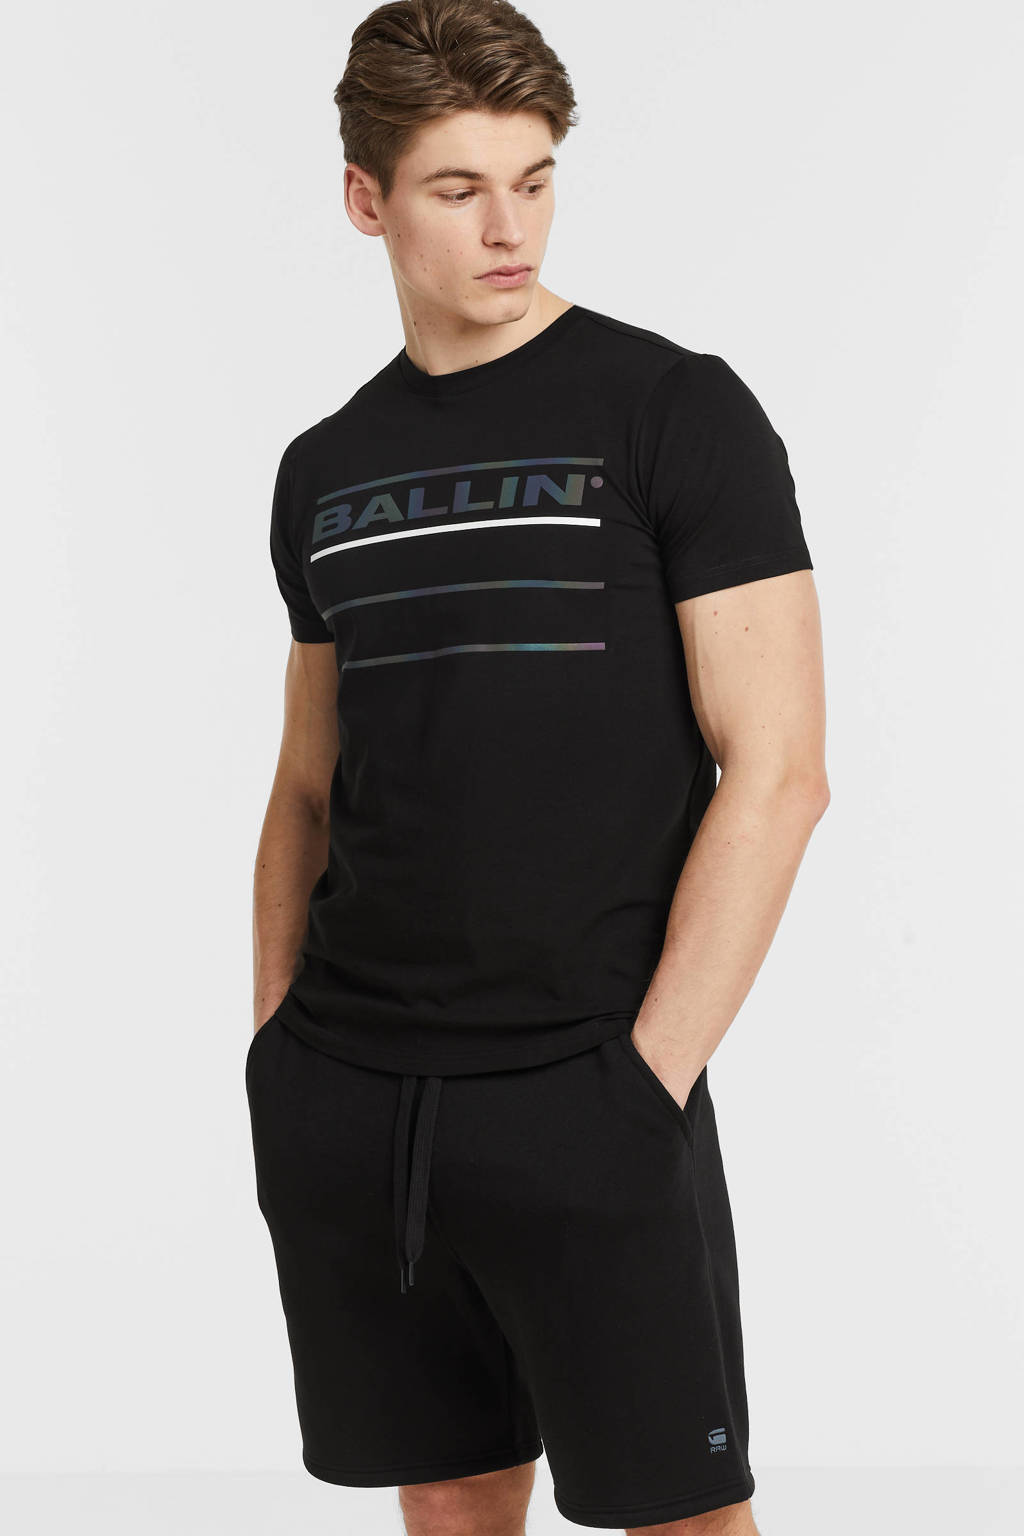 Zwarte heren Ballin T-shirt van stretchkatoen met logo dessin, korte mouwen en ronde hals